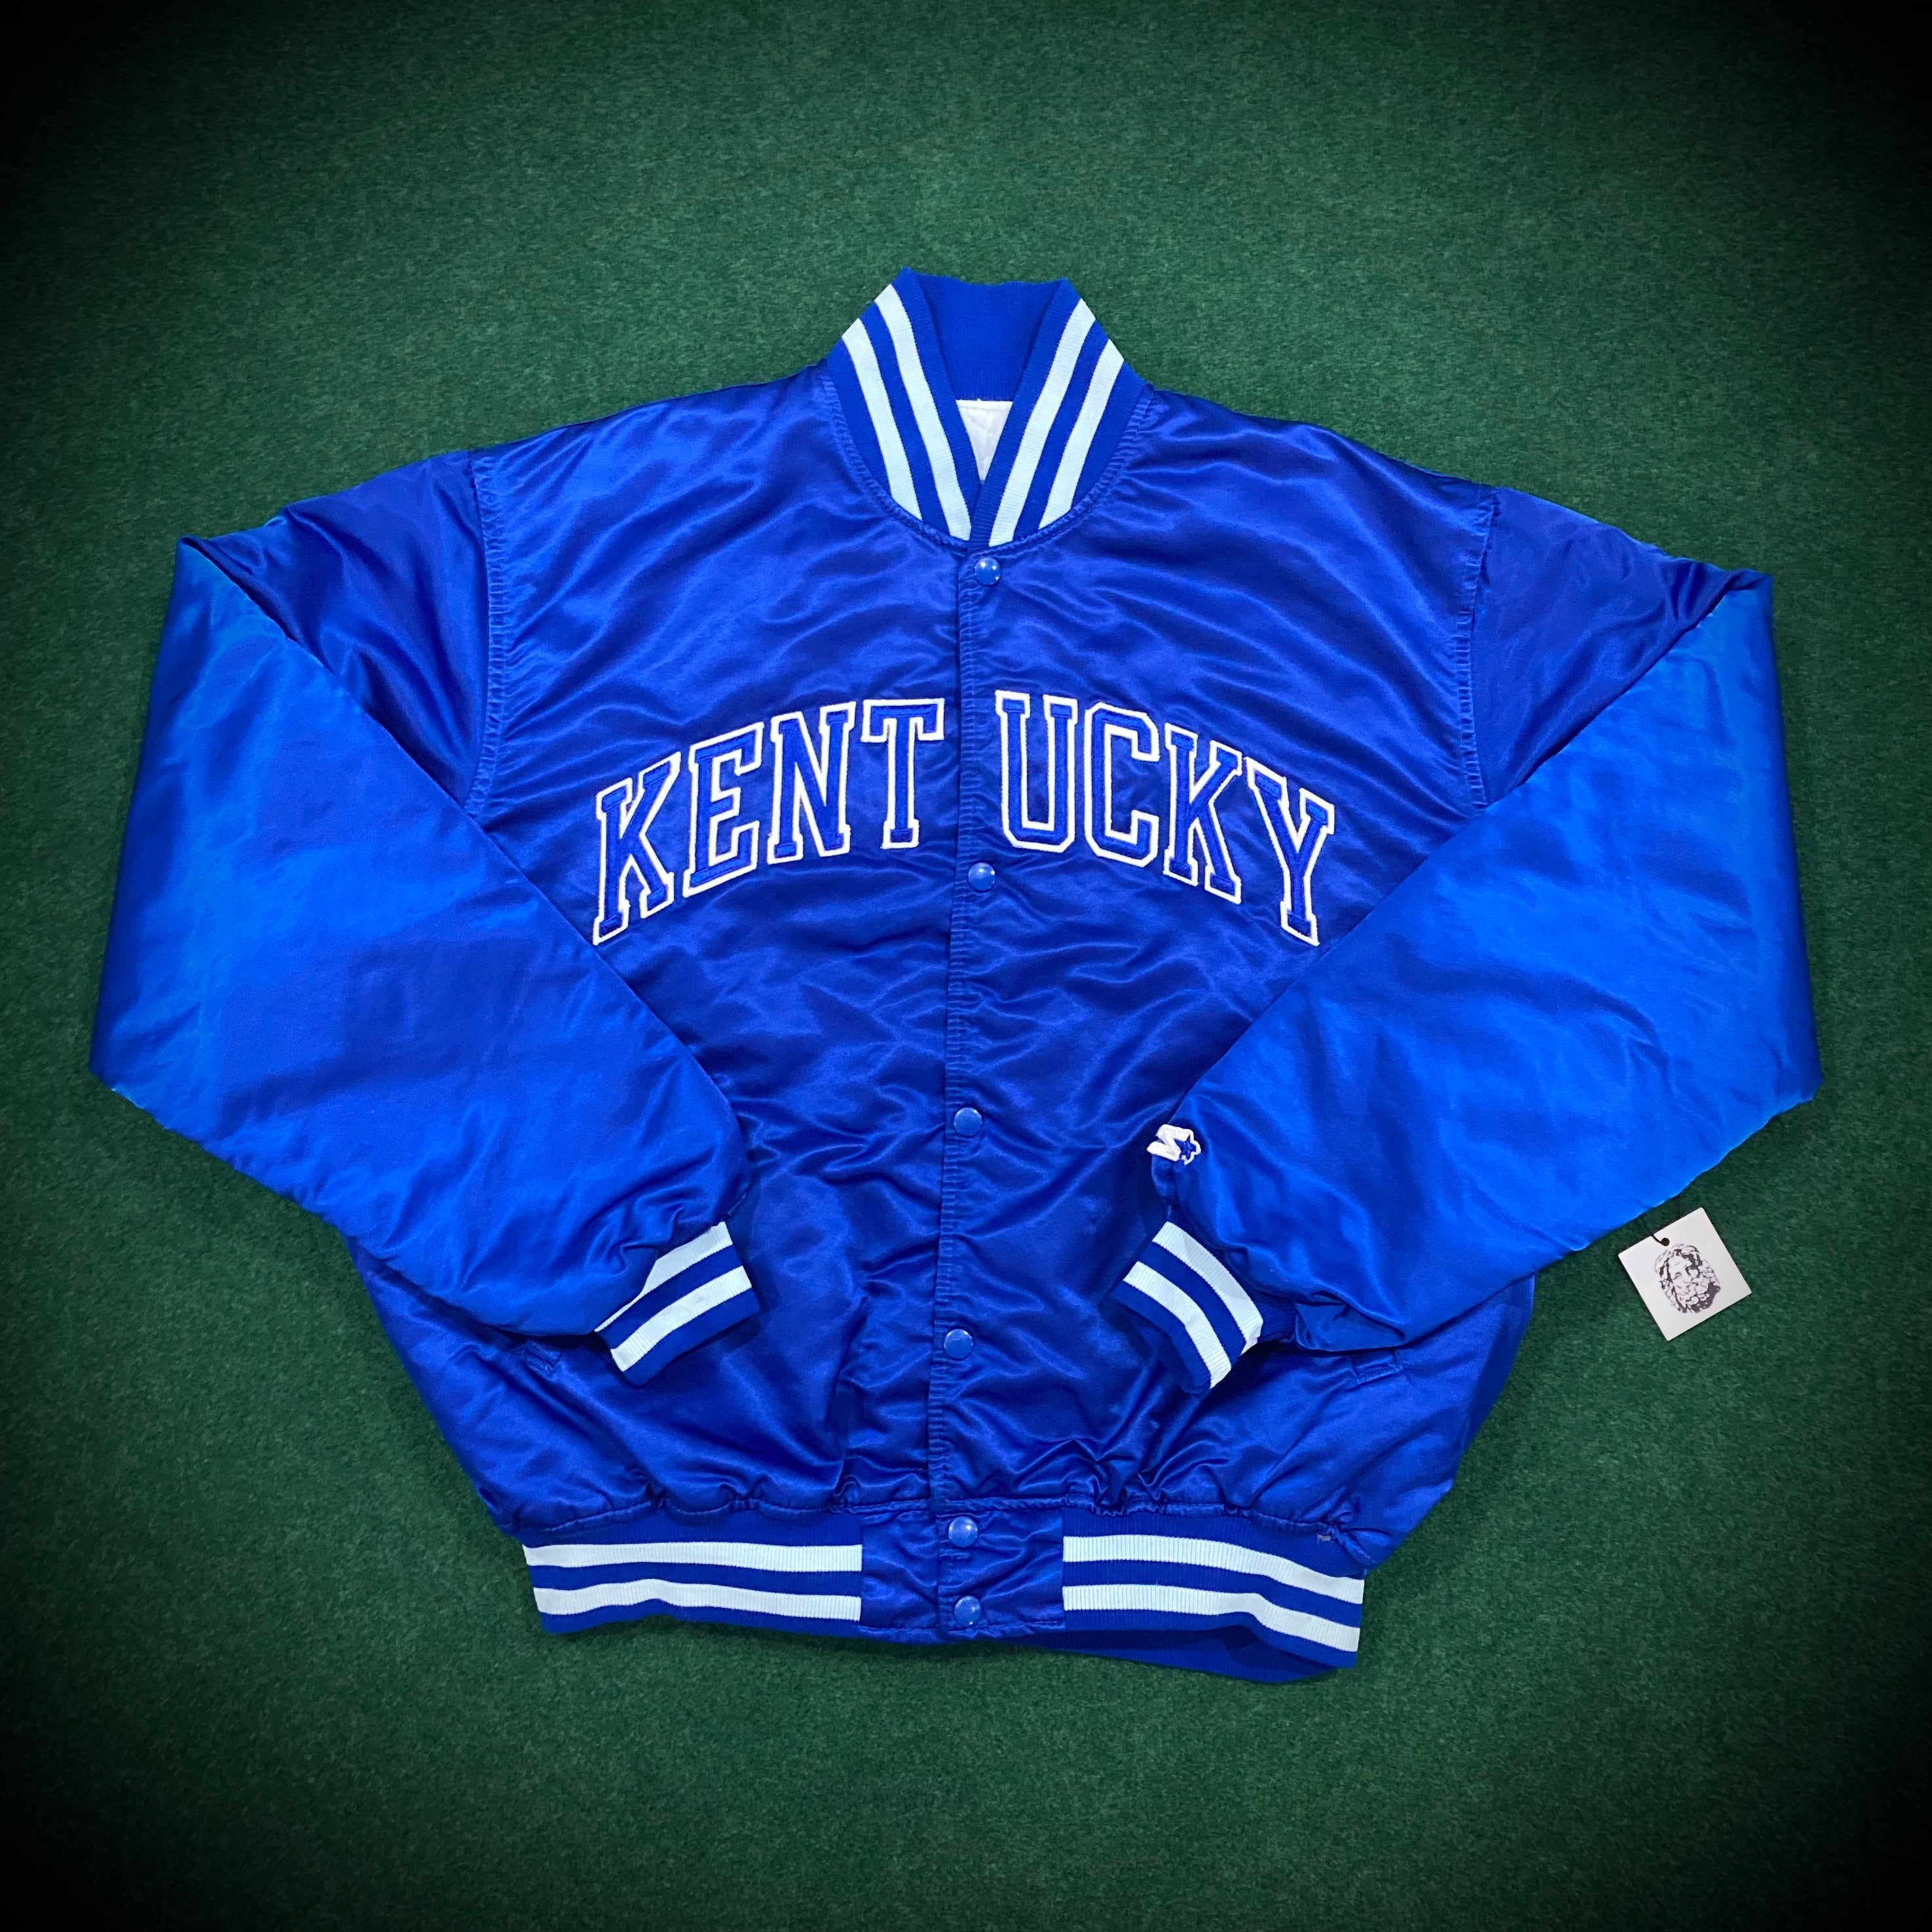 Vintage University Kentucky Starter Jacket – ROMAN